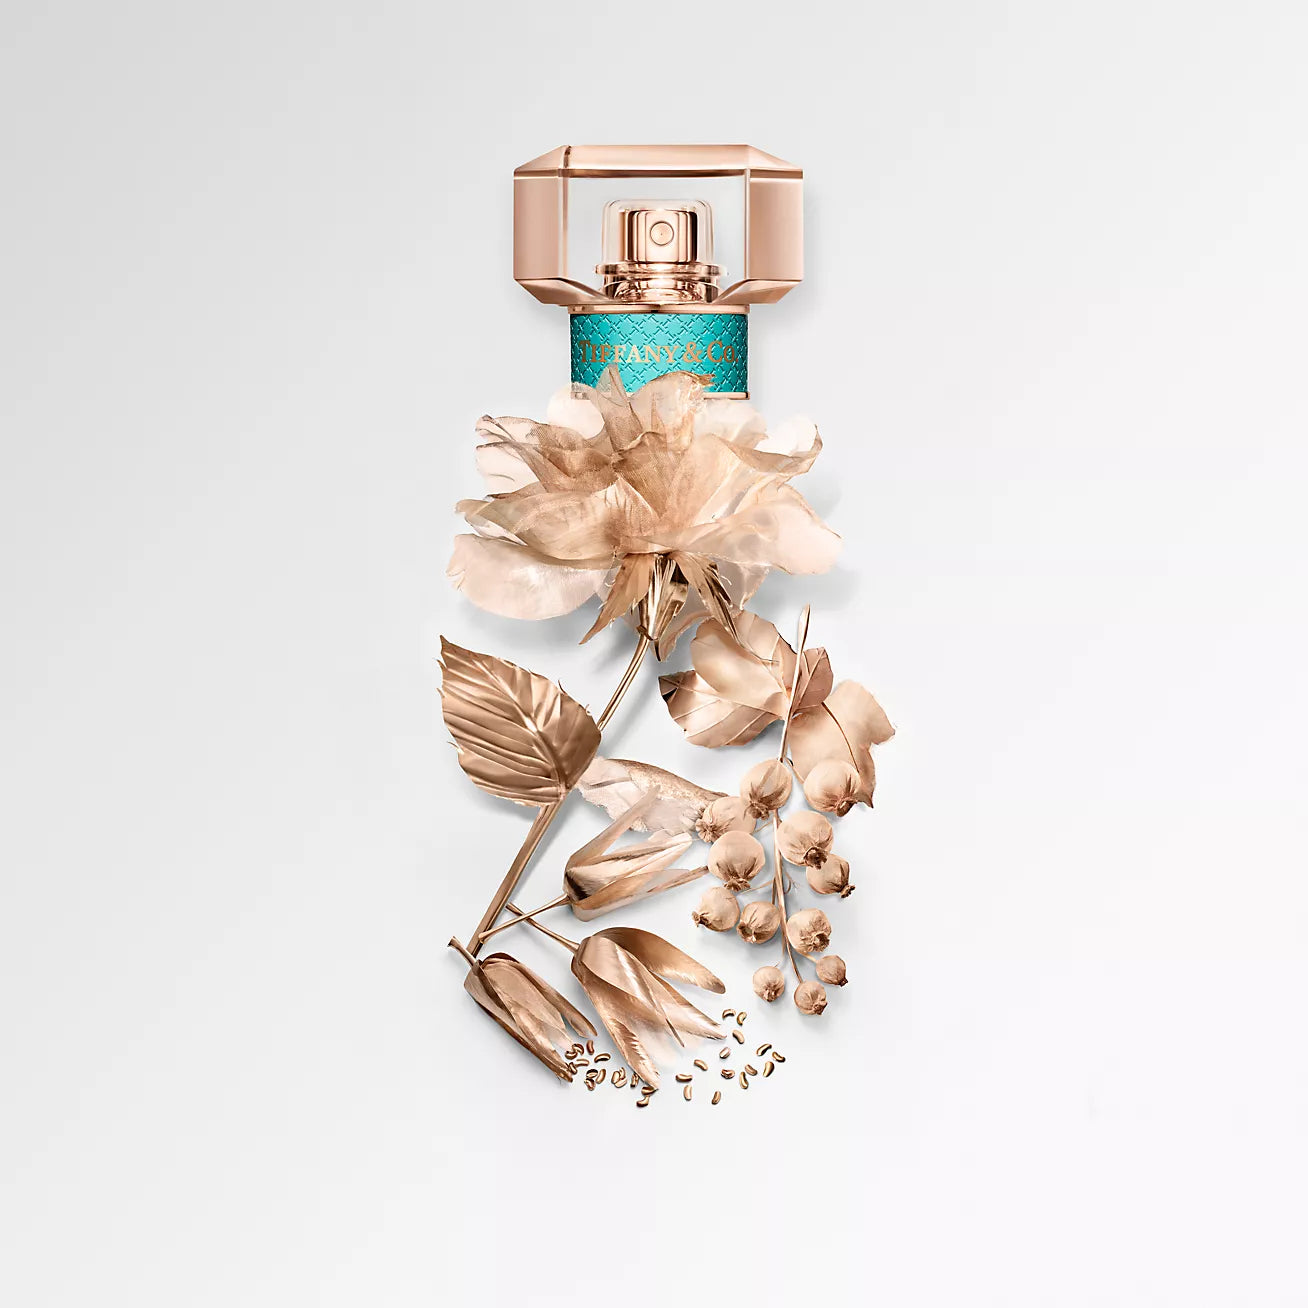 Tiffany & Co Rose Gold Eau de Parfum